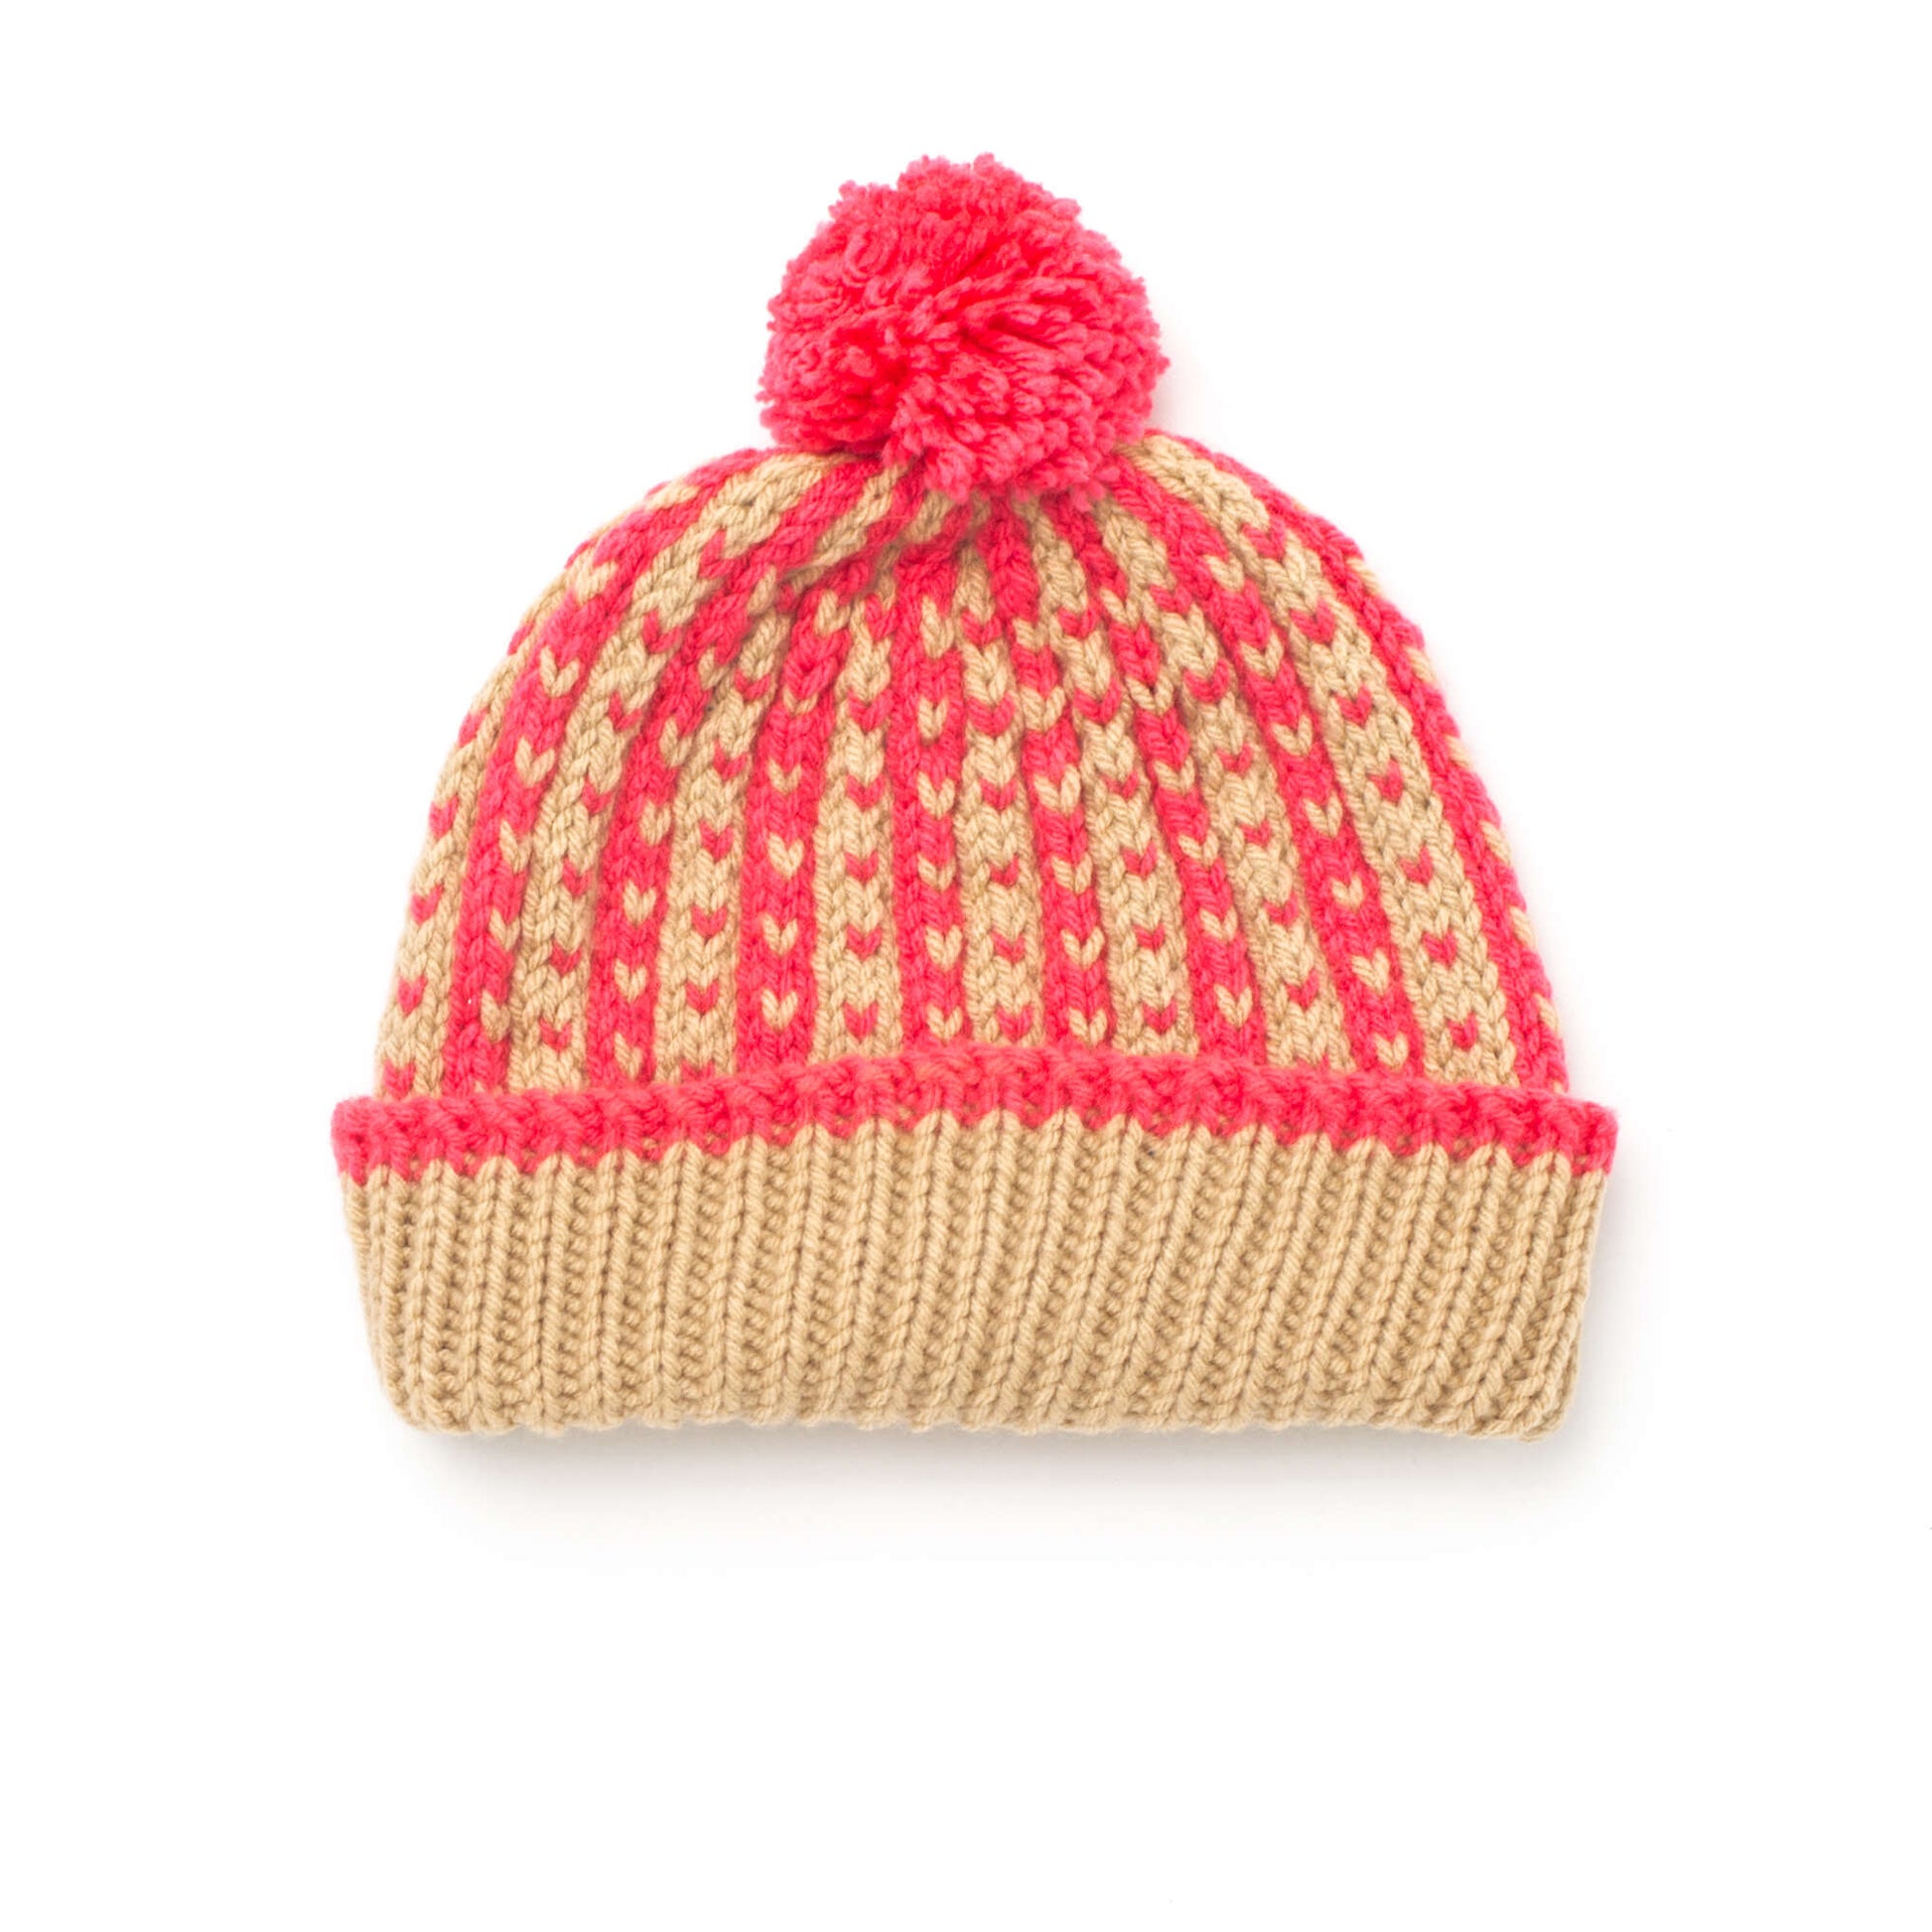 Bernat Winter Weekend Hat Knit Hat made in Bernat Super Value yarn